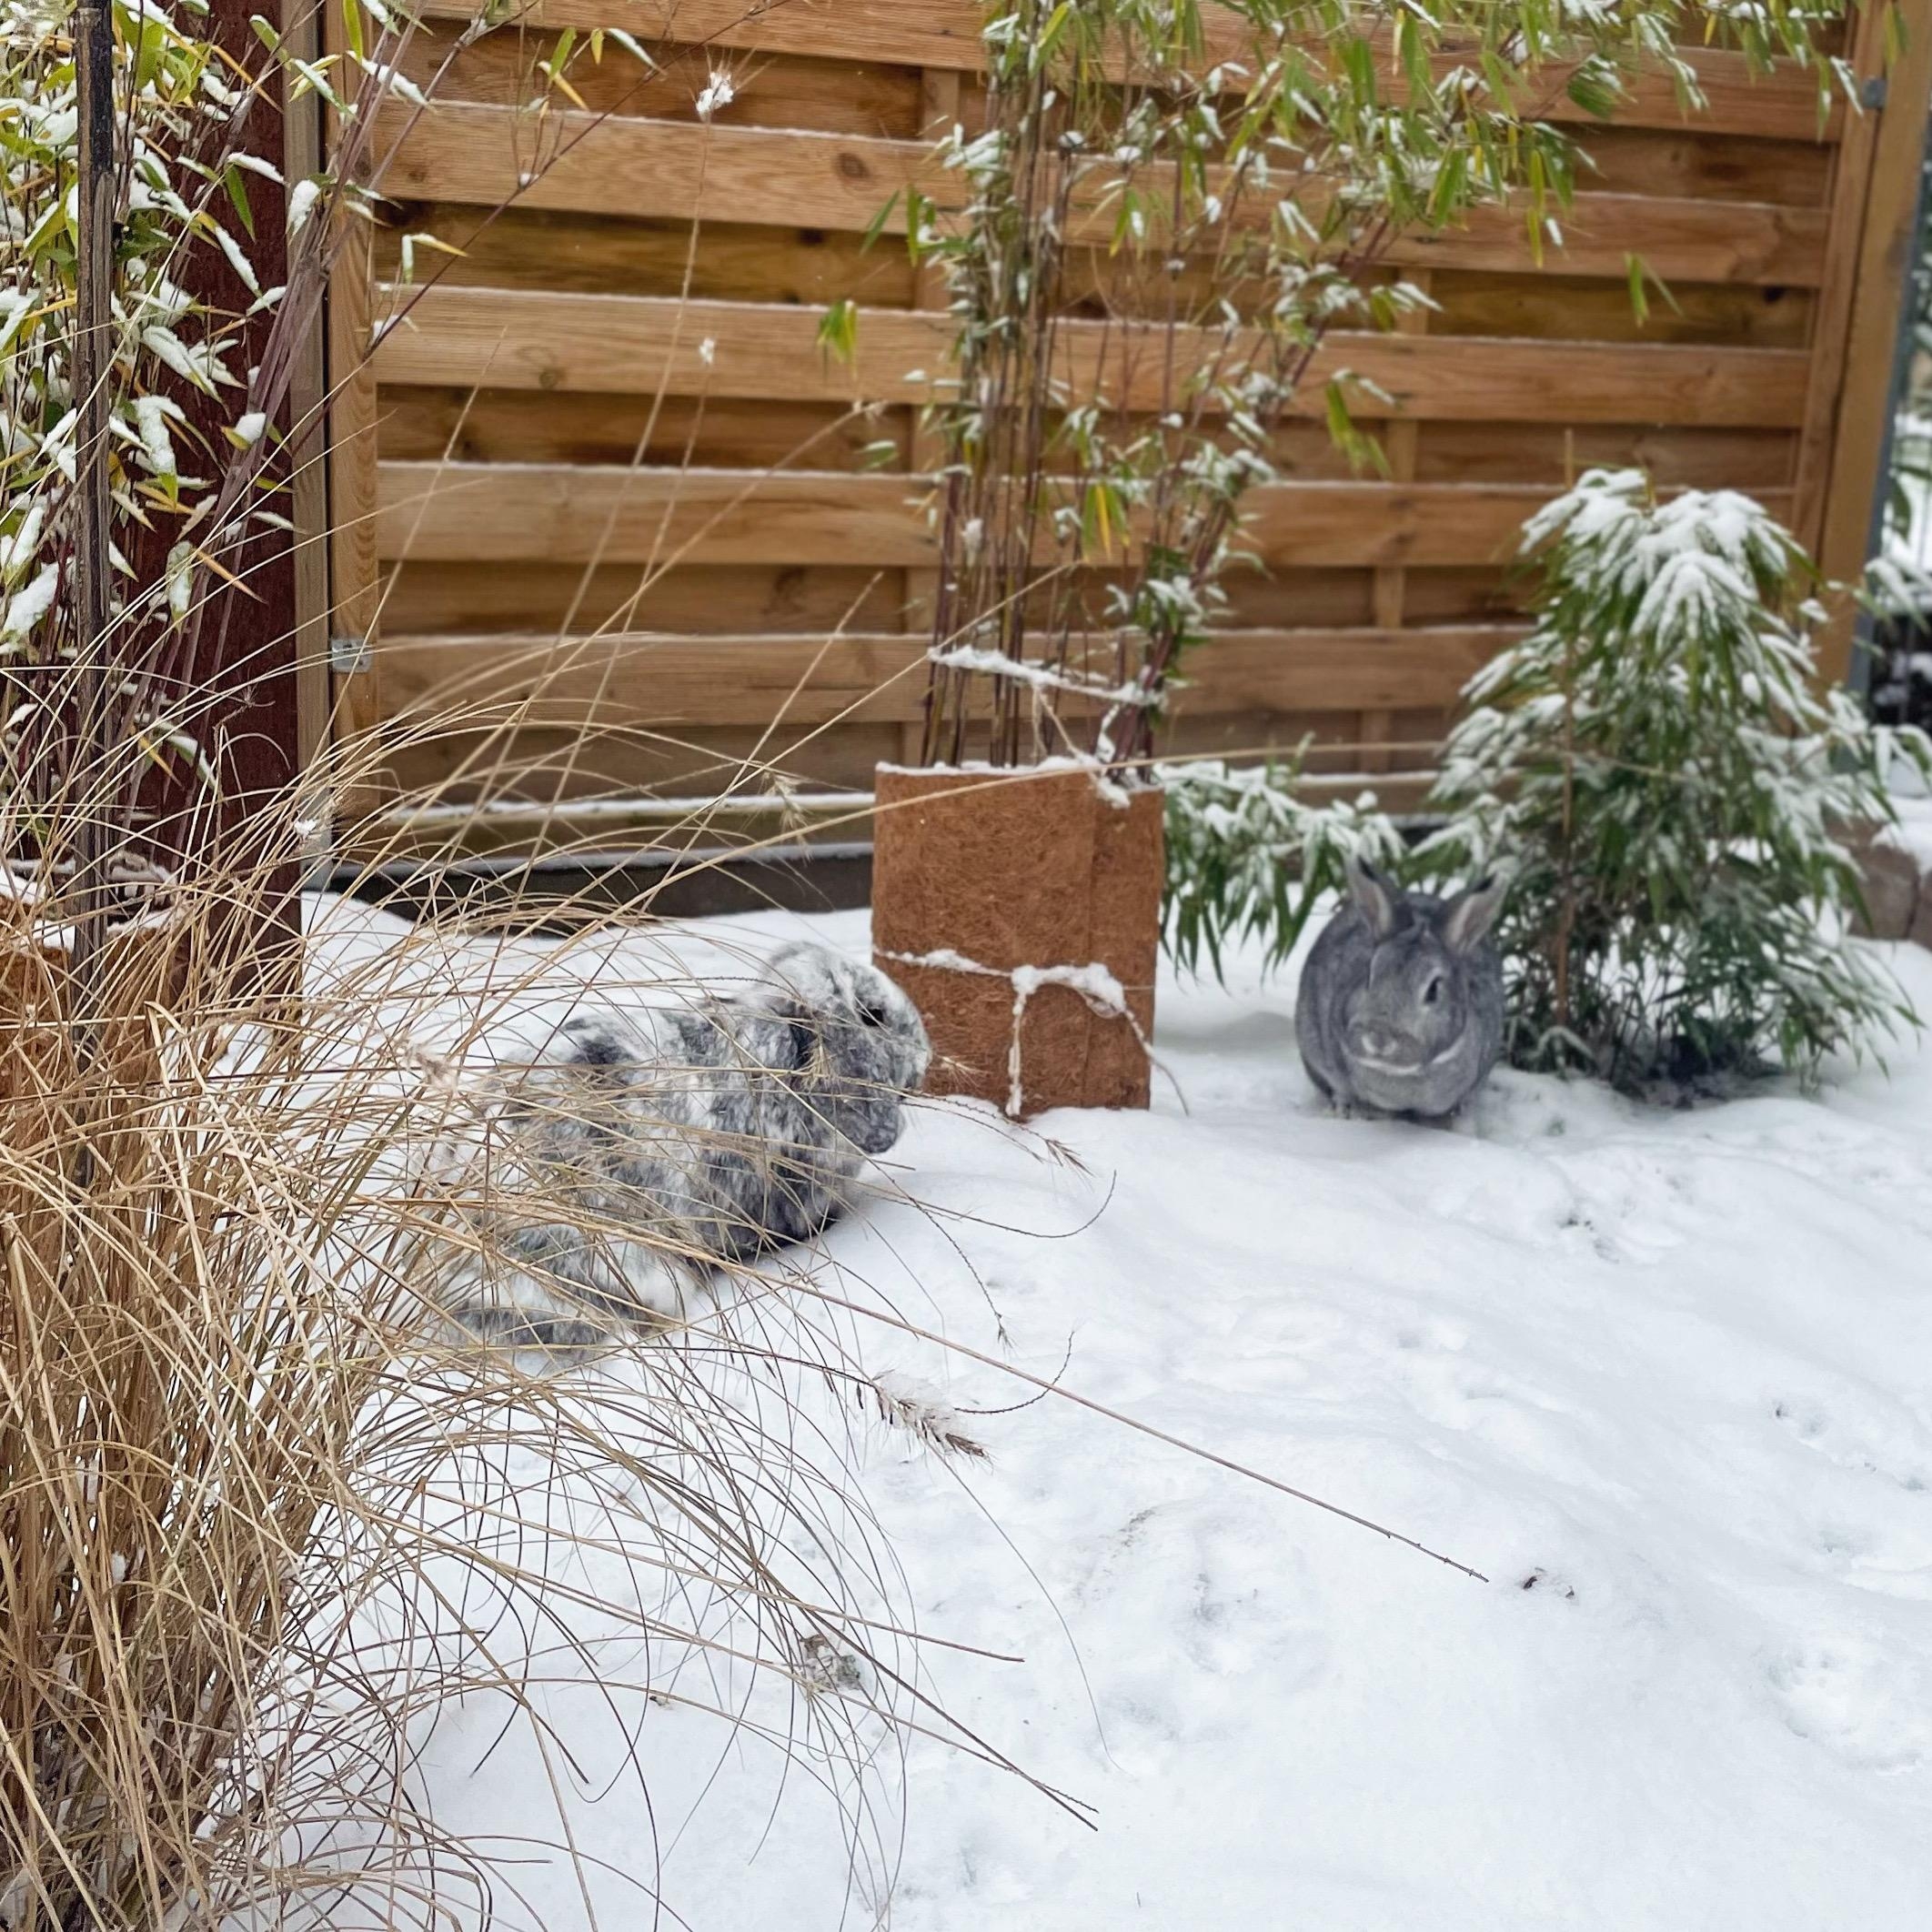 Auch die #Kaninchen haben ihren Spaß im #schnee ❄️! #garten #bambus 